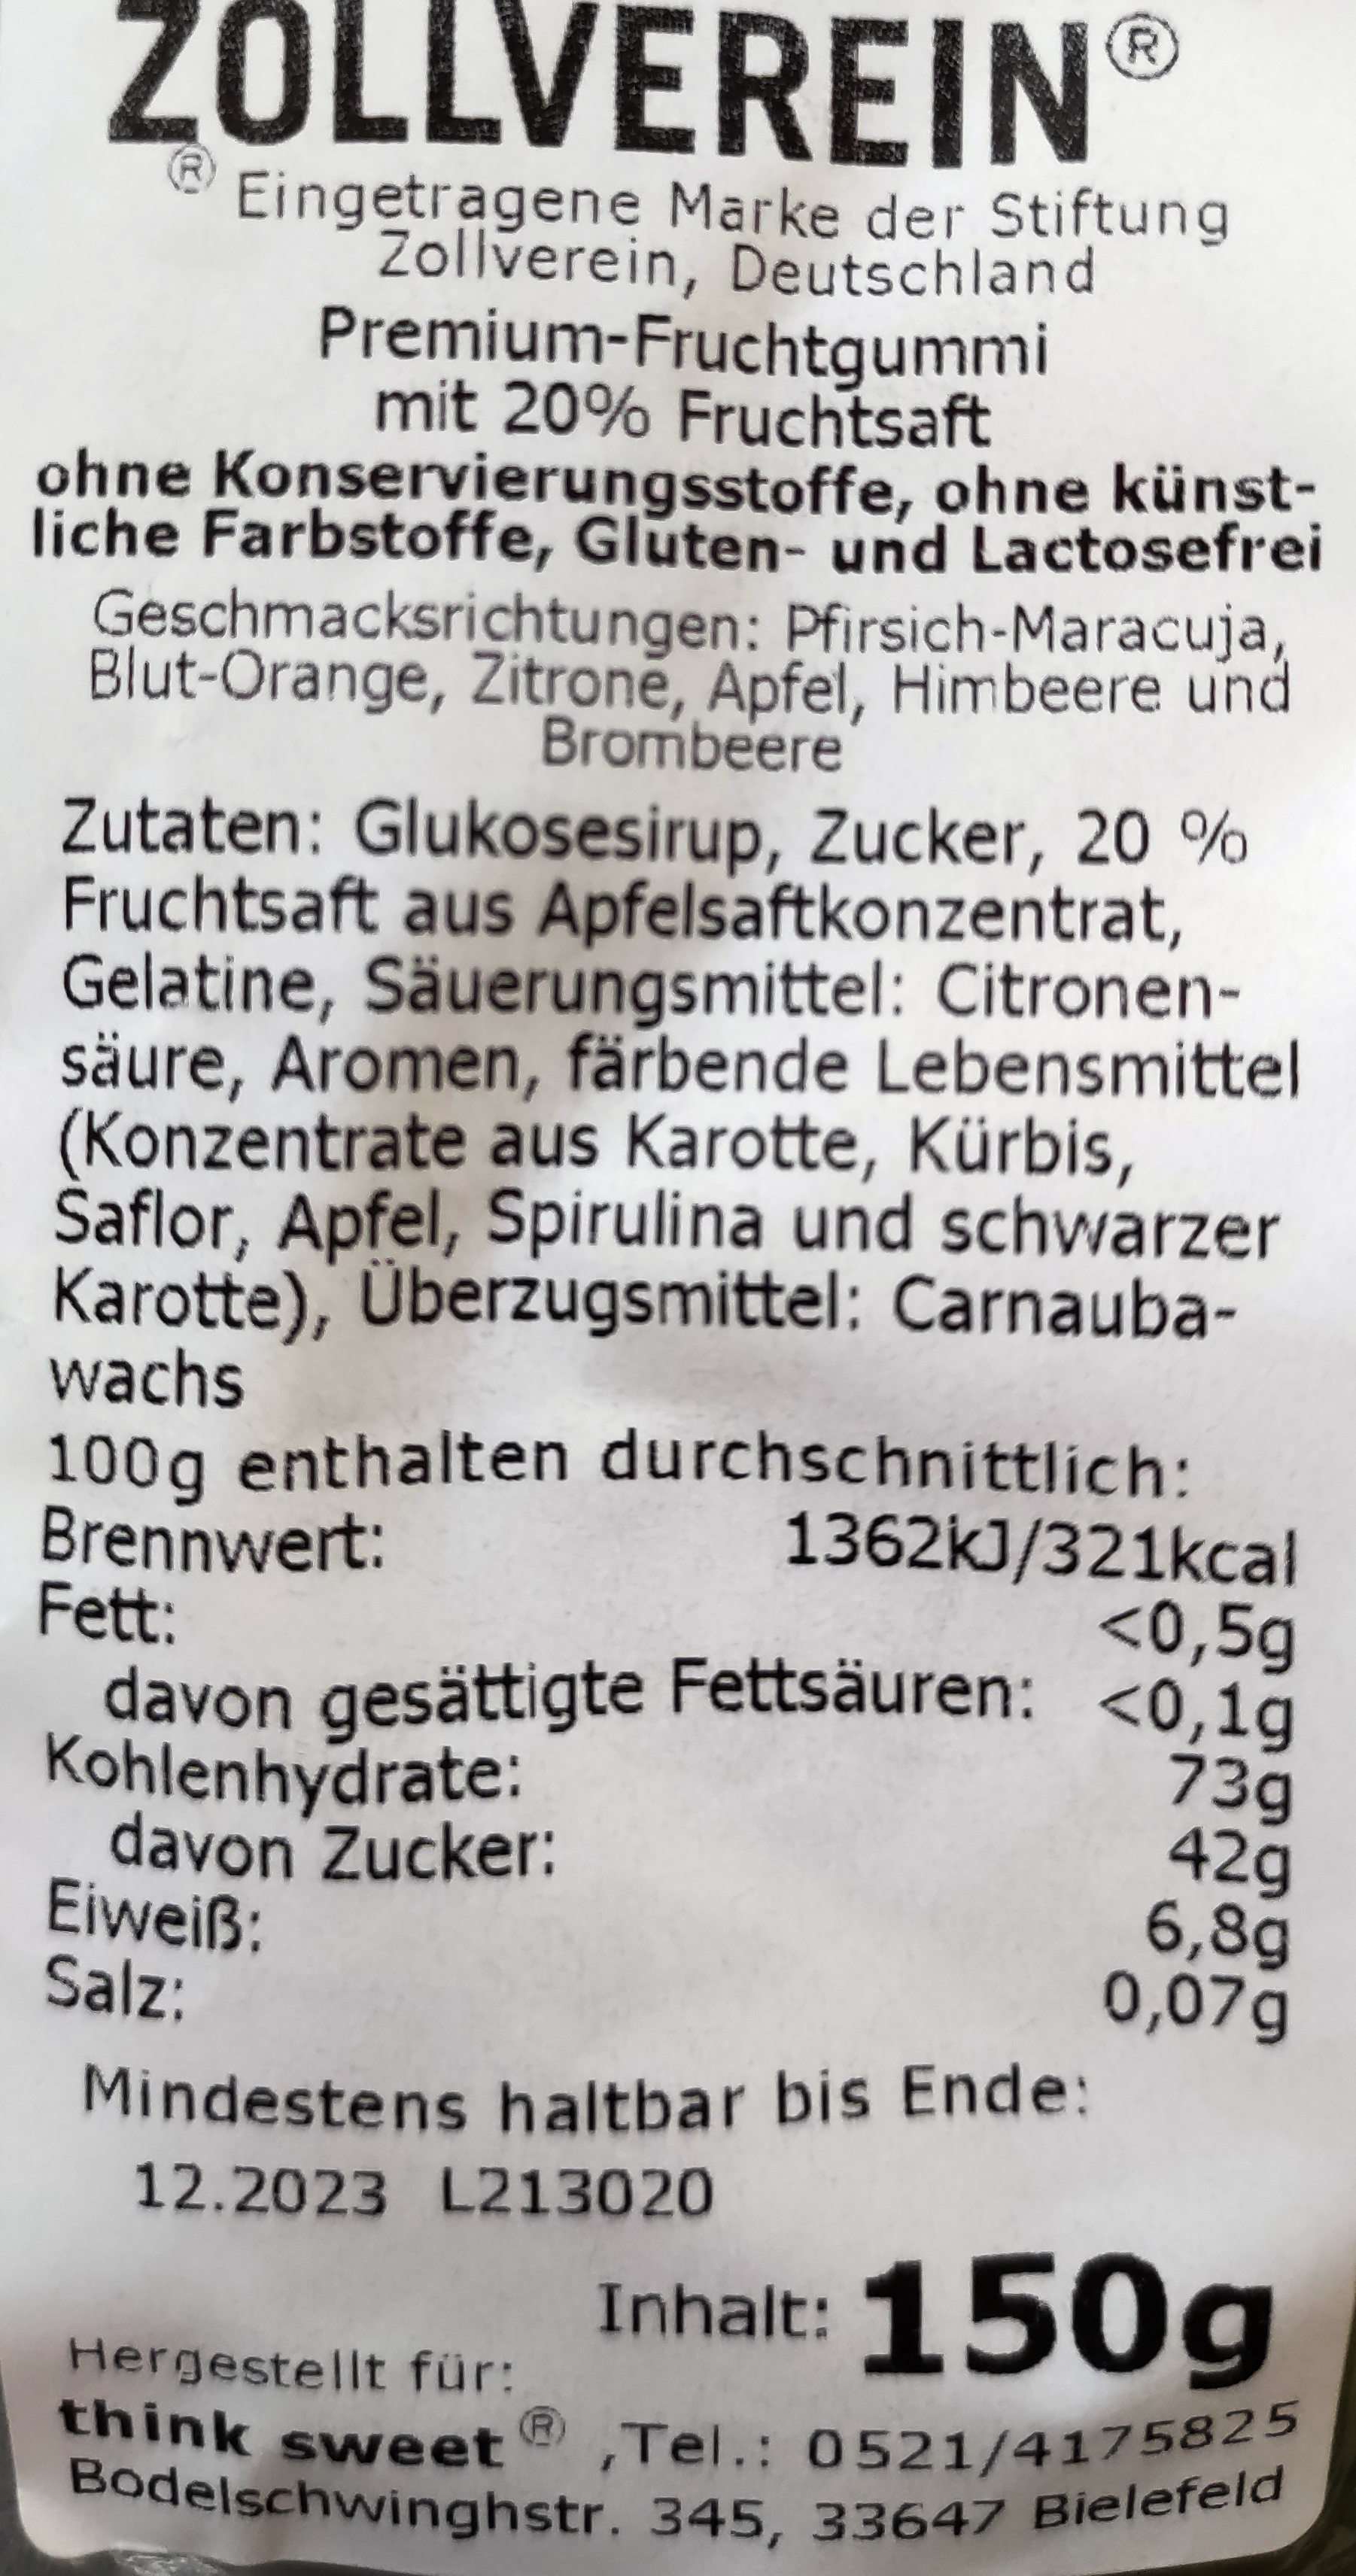 Premium-Fruchtgummi "Glück auf" - 150g.